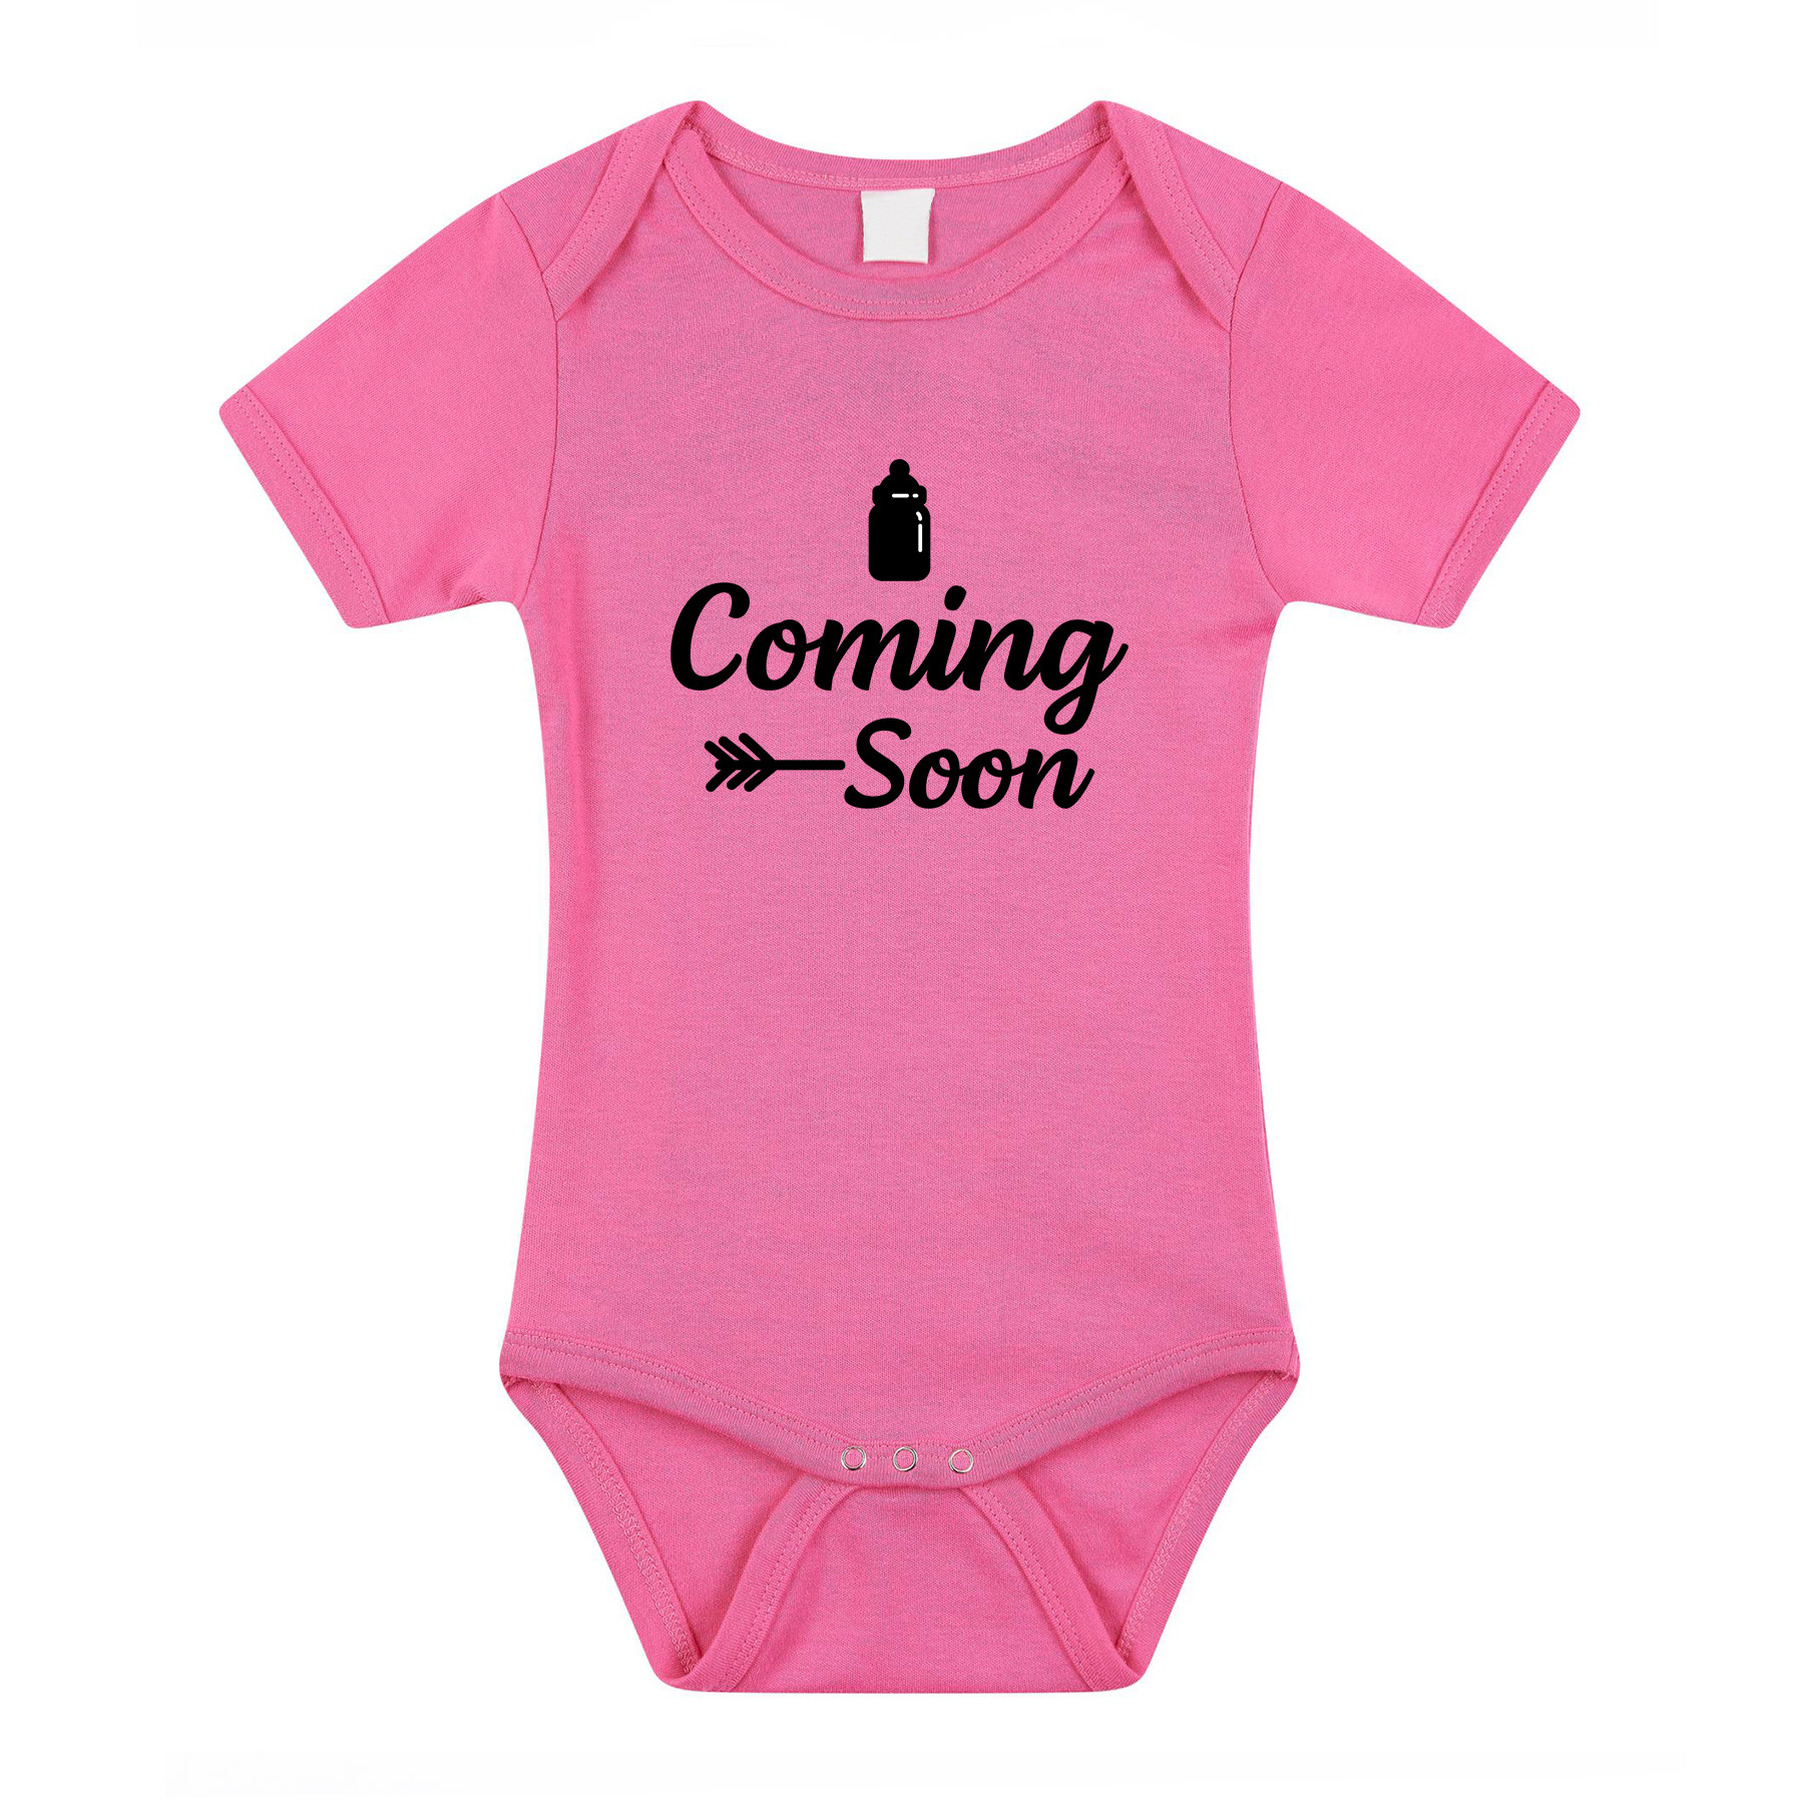 Coming soon gender reveal baby rompertje roze meisjes